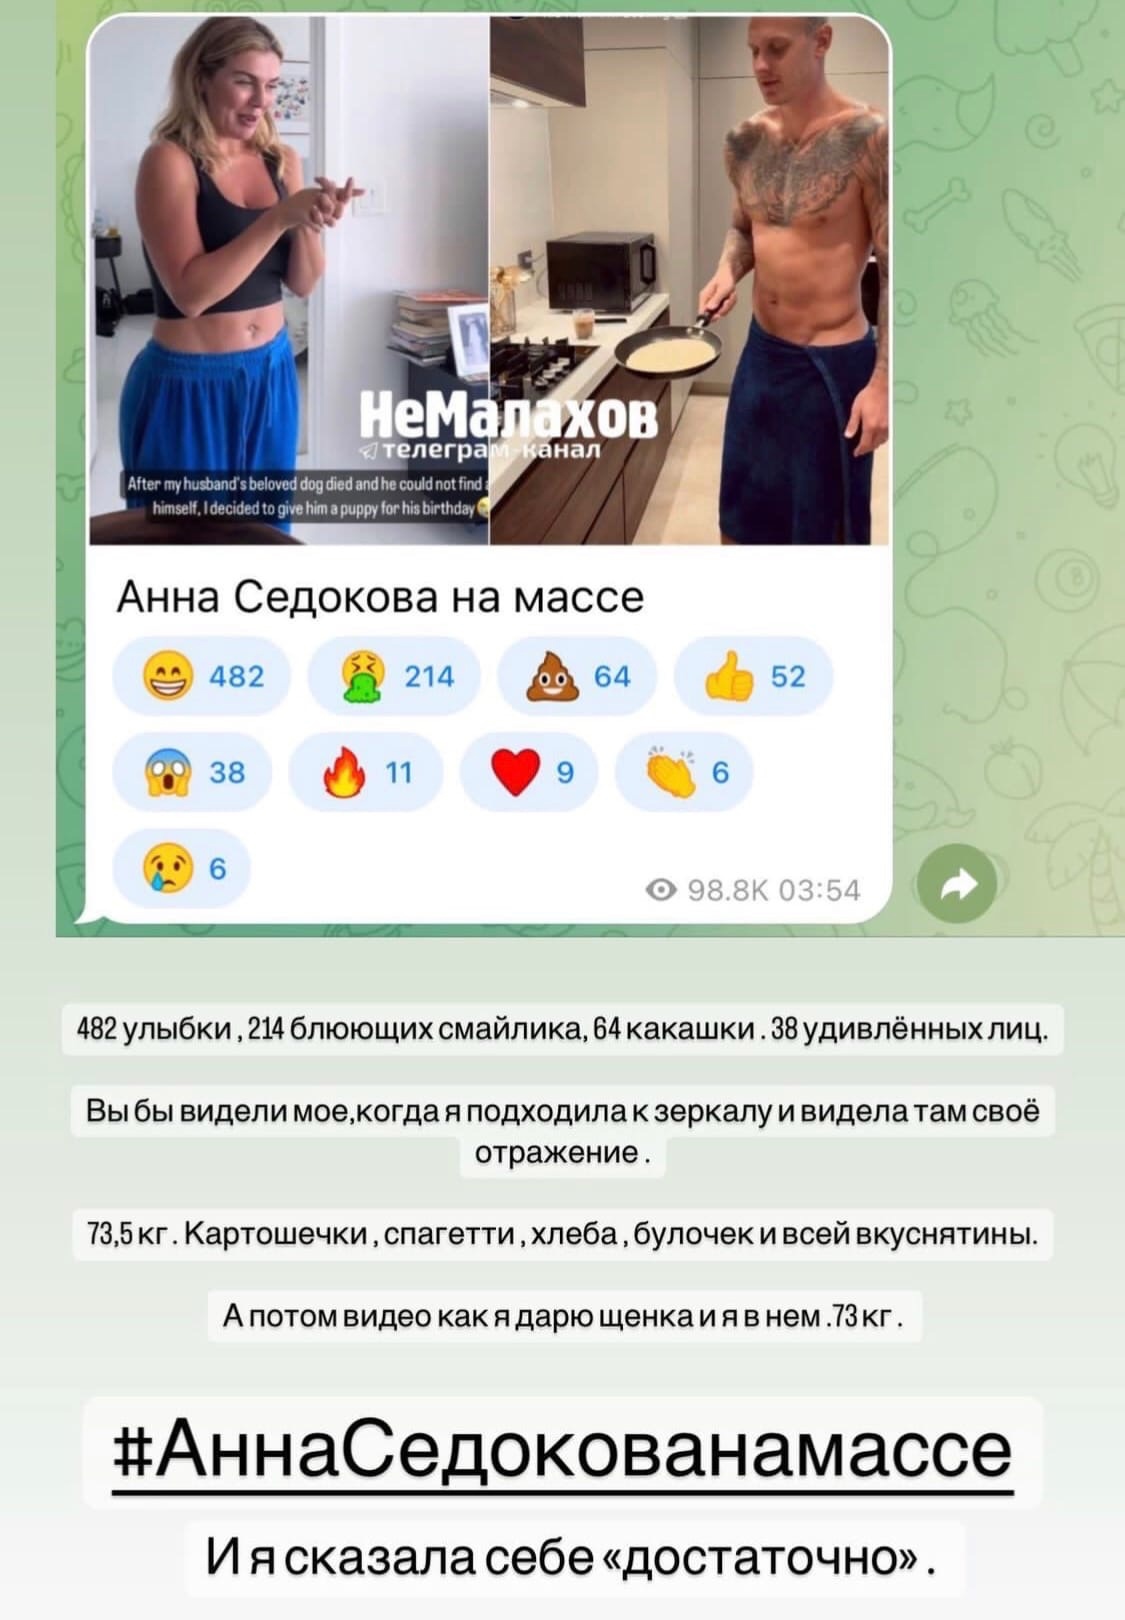 Анна Седокова заметно похудела после того, как ее высмеяли в сети
